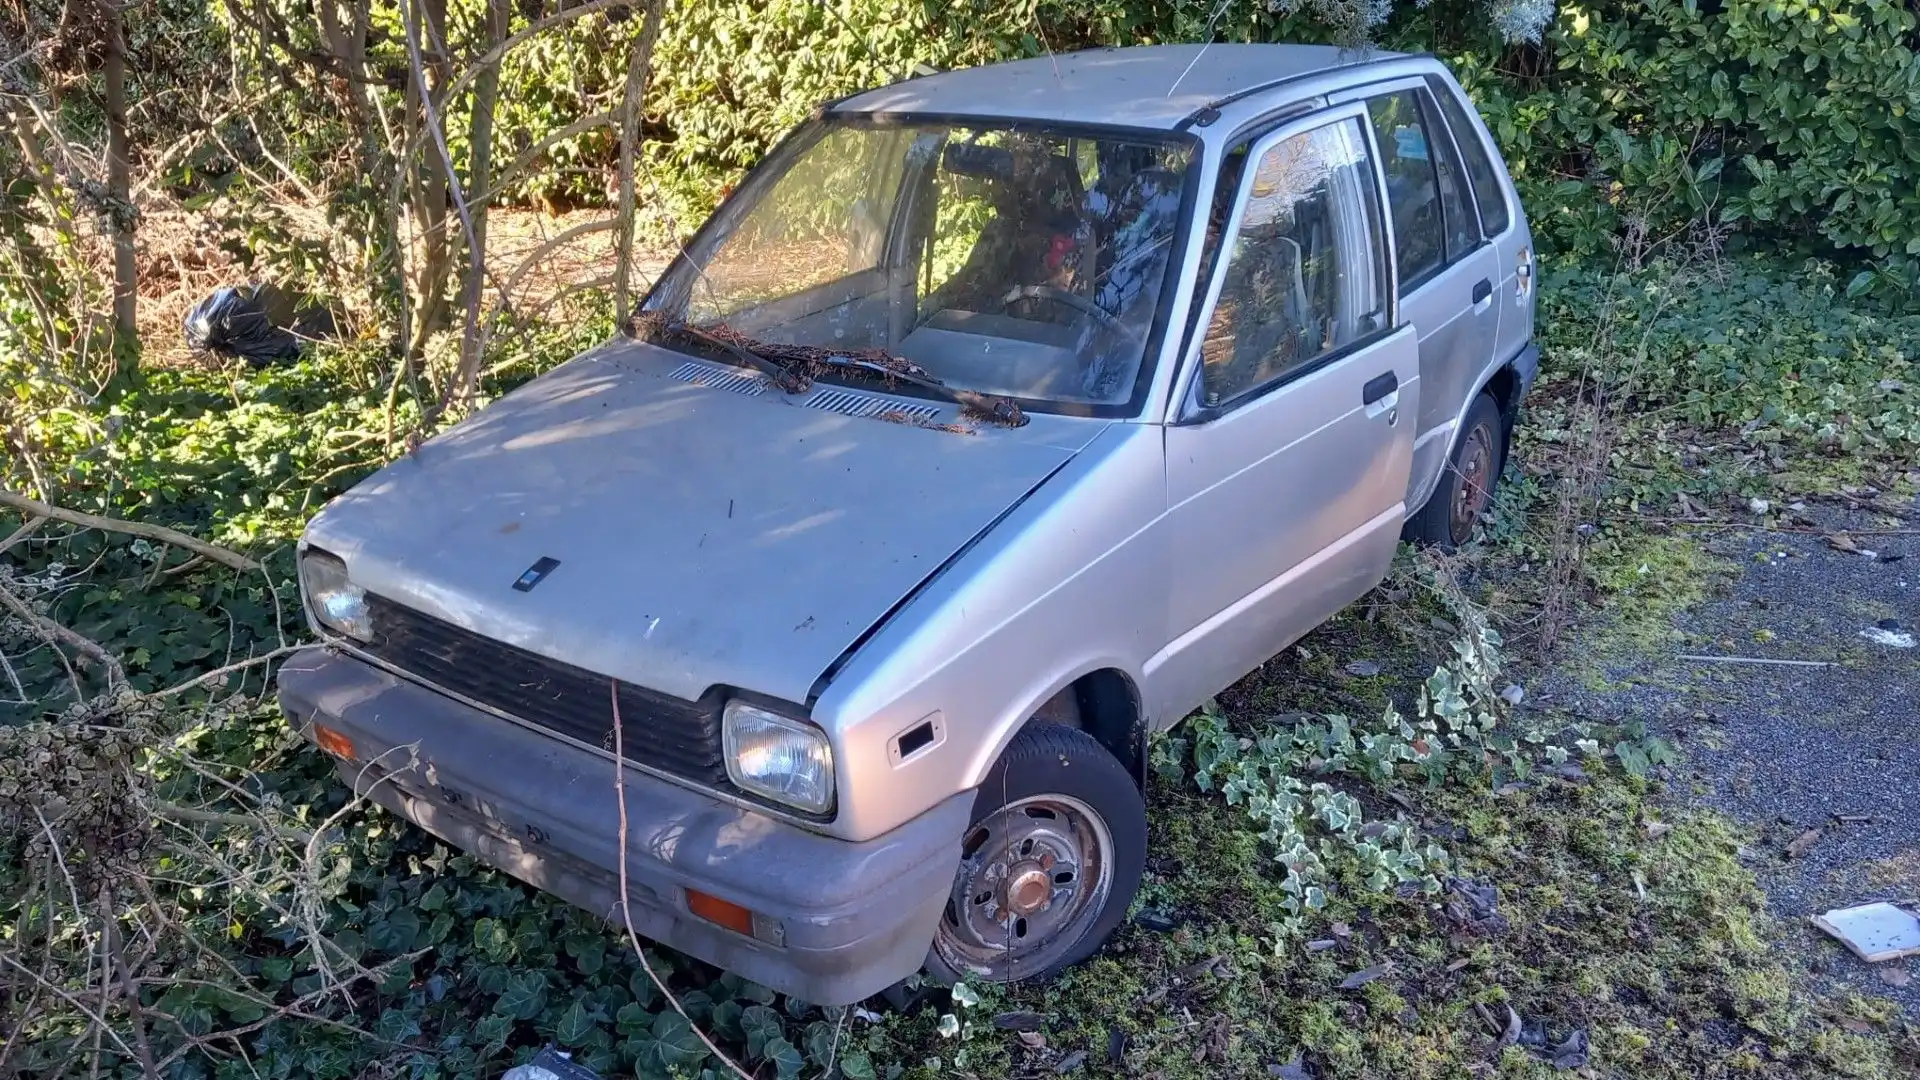 E' stata ritrovata in un bosco una Maruti Suzuki 800